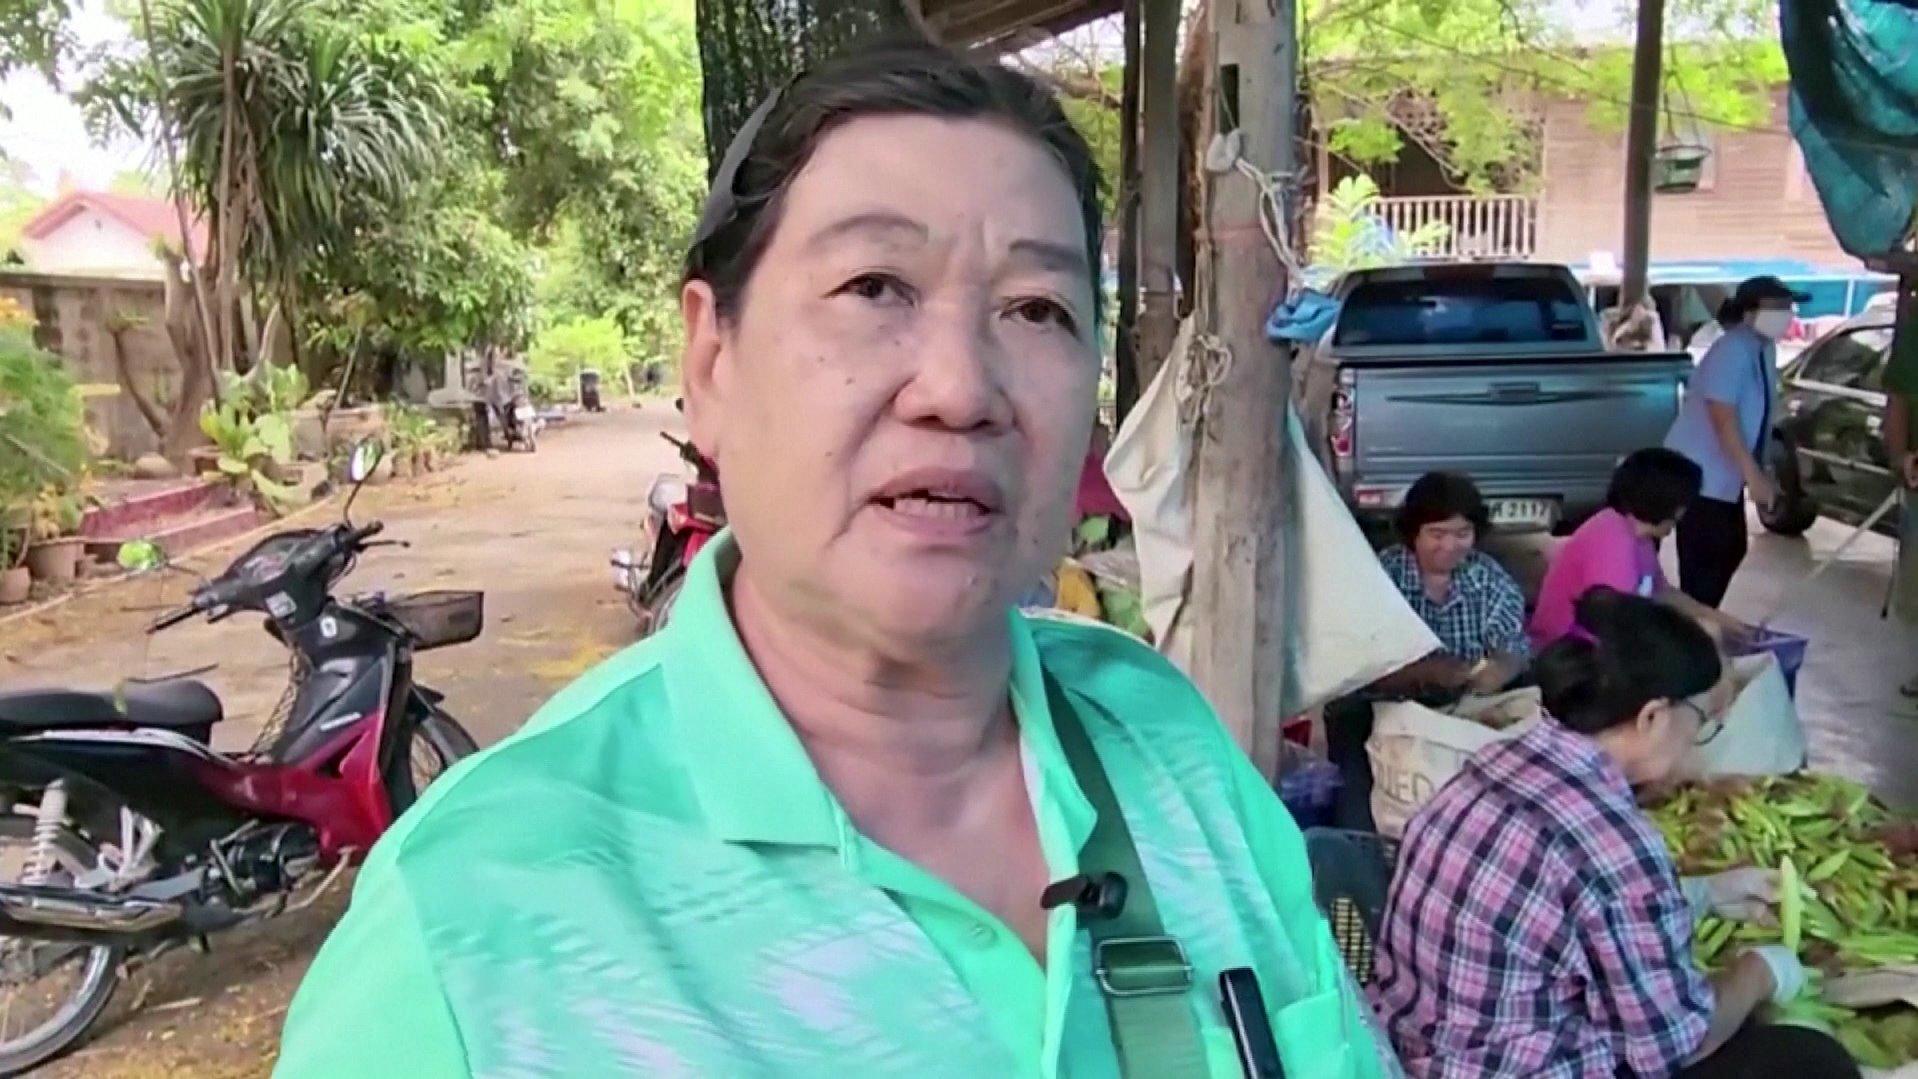 Thailand - Frau vergiftet zwölf ihrer Freunde mit Zyanid